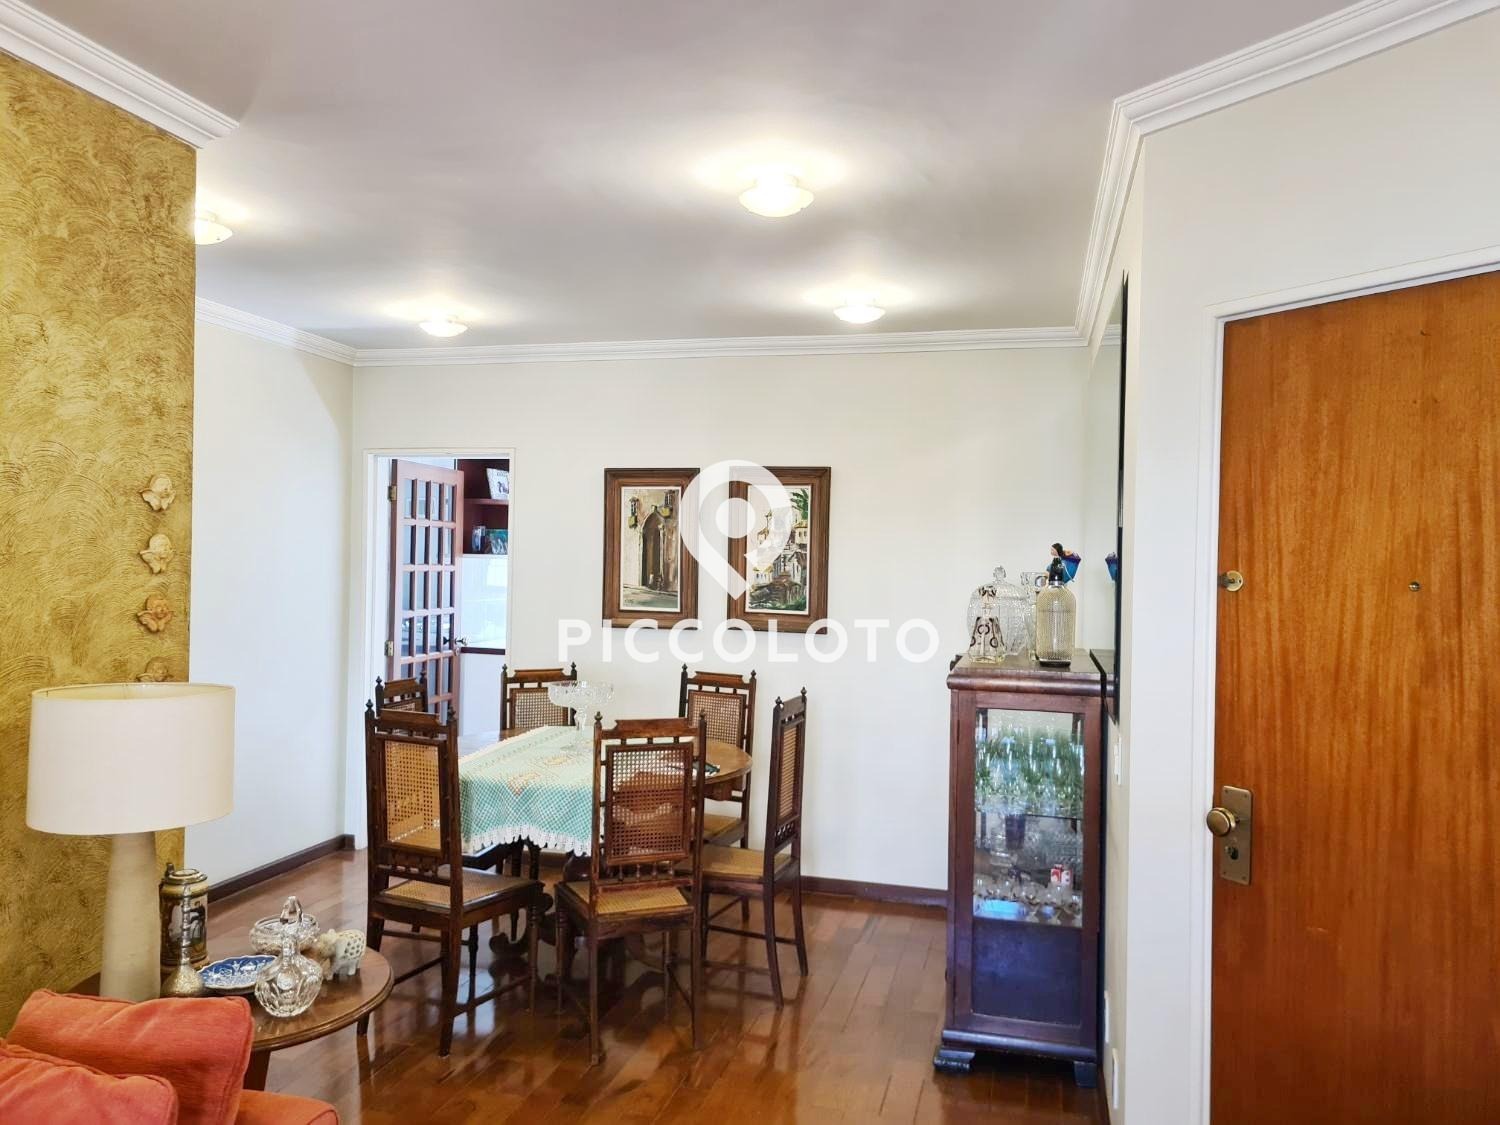 Piccoloto -Apartamento à venda no Jardim Flamboyant em Campinas